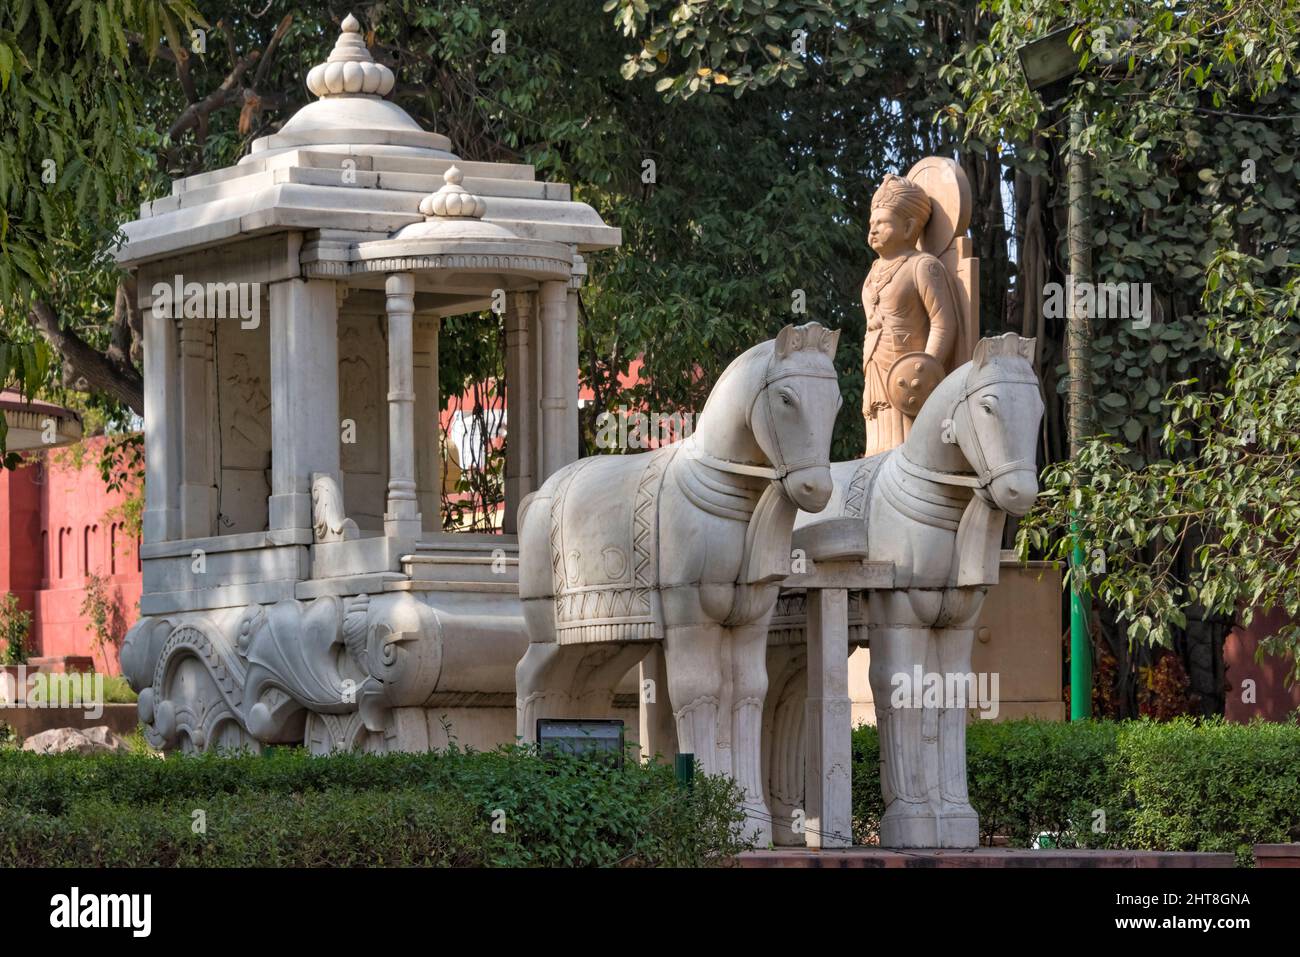 Sculpture en pierre de char à cheval à l'extérieur du temple Laxminarayan, également connu sous le nom de Birla Mandir, un temple hindou à Delhi, en Inde Banque D'Images